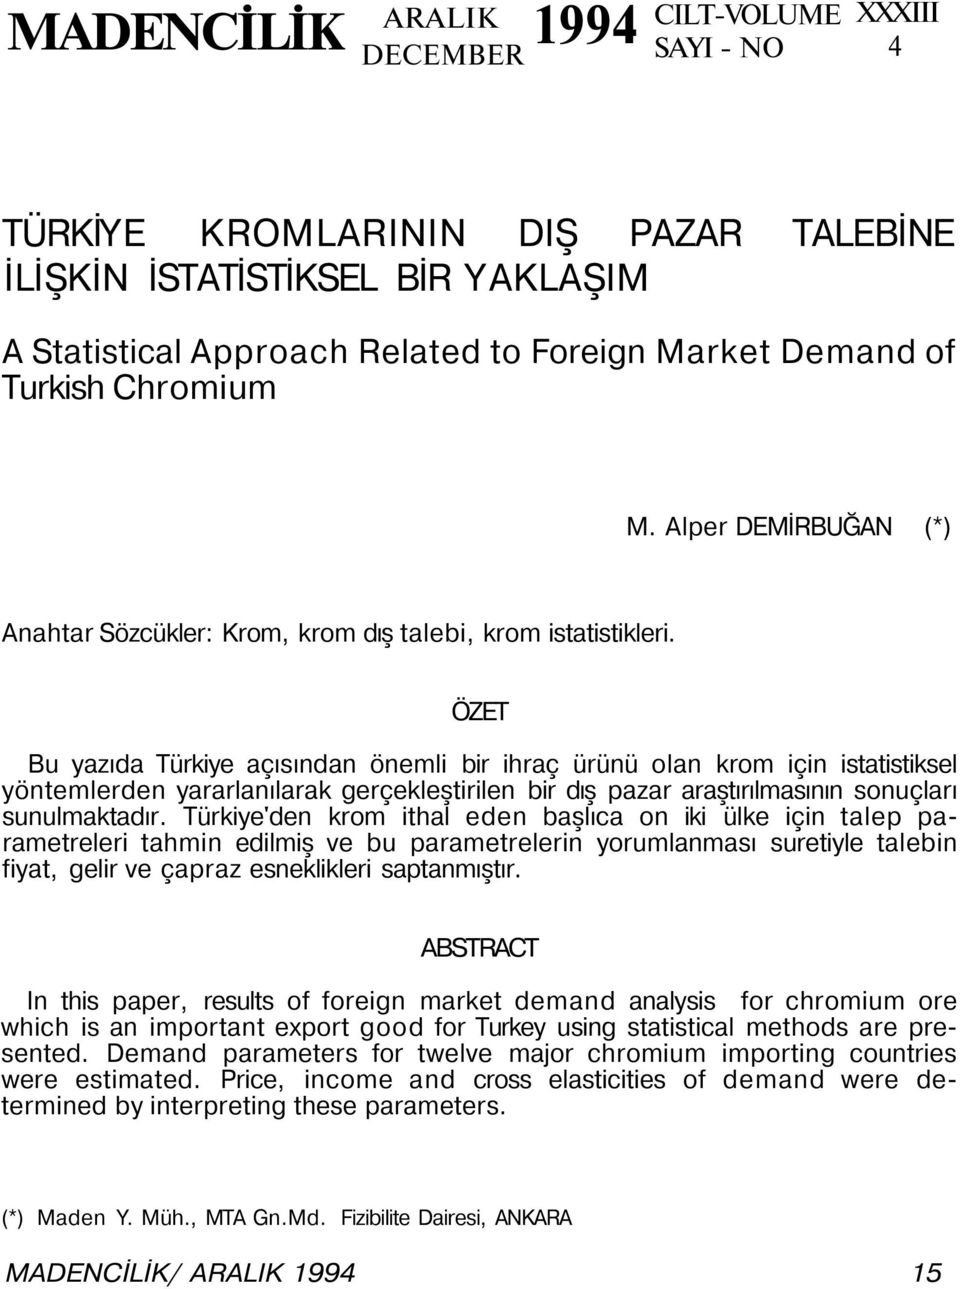 ÖZET Bu yazıda Türkiye açısından önemli bir ihraç ürünü olan krom için istatistiksel yöntemlerden yararlanılarak gerçekleştirilen bir dış pazar araştırılmasının sonuçları sunulmaktadır.